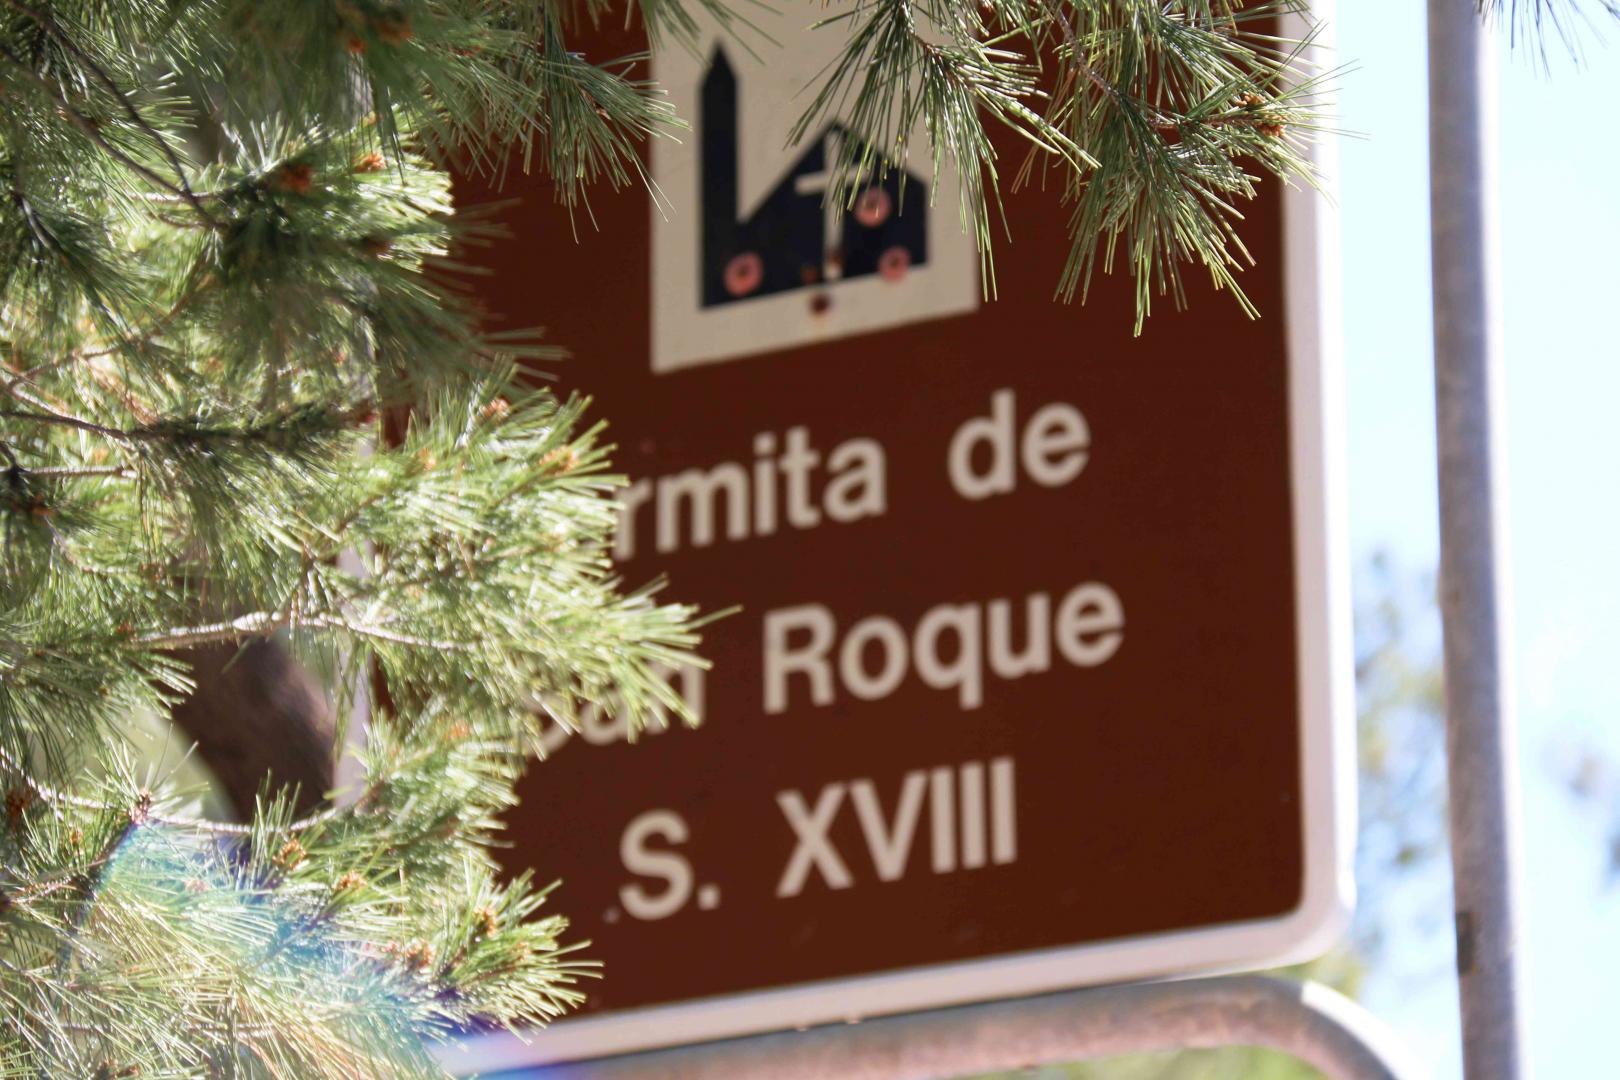 Romería de San Roque 2016 en Blanca. En la Ermita